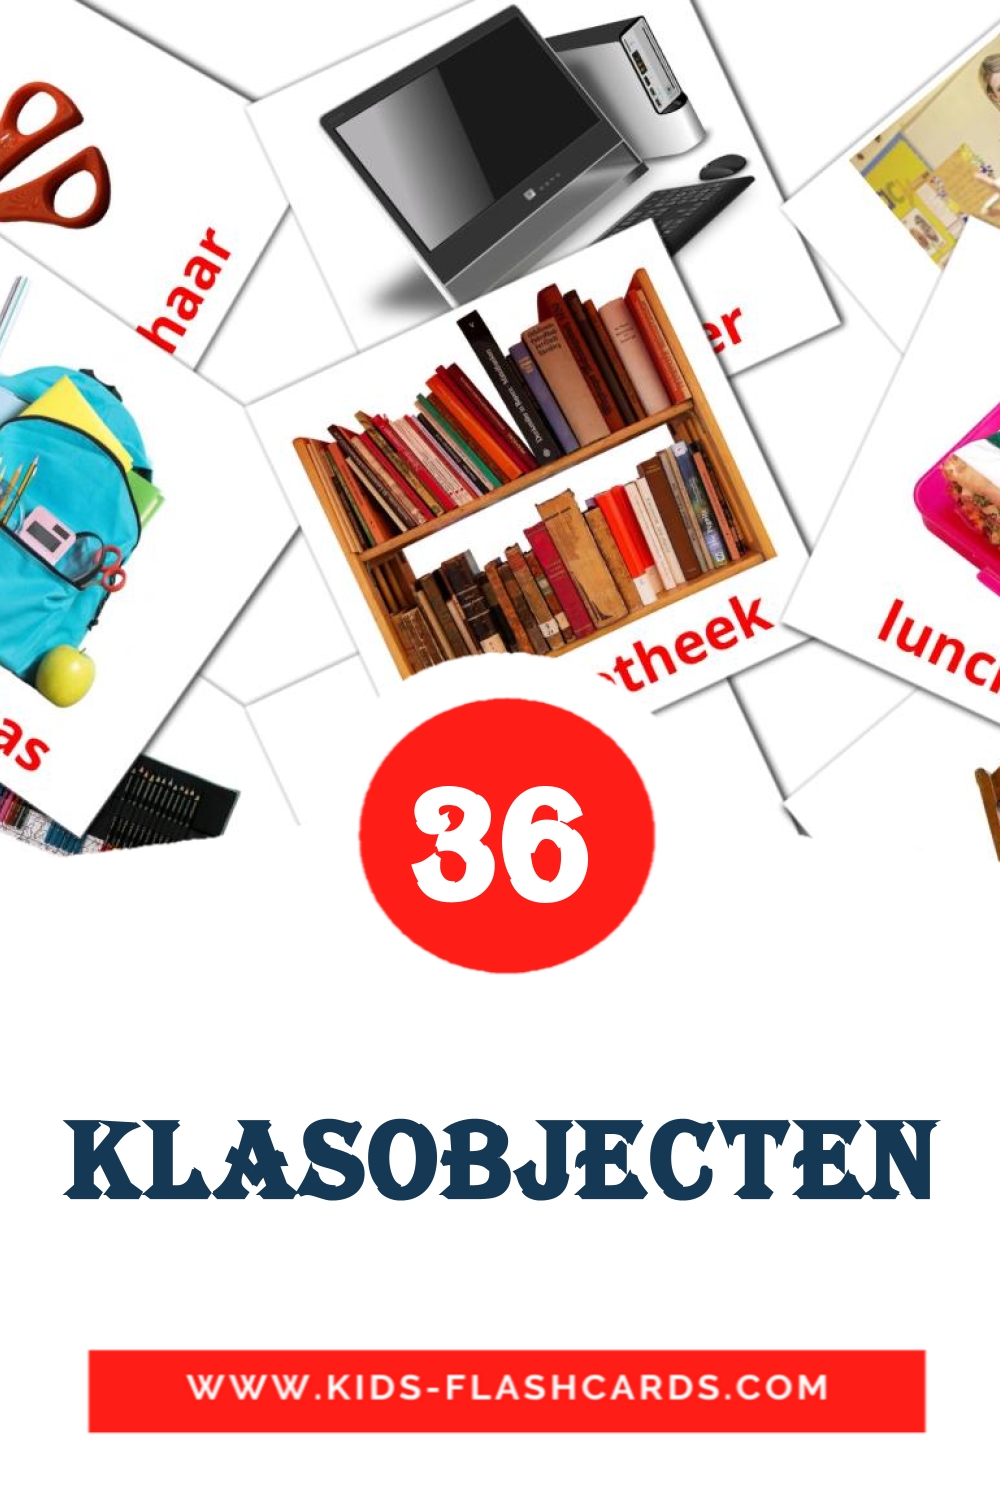 36 Klasobjecten Picture Cards for Kindergarden in dutch